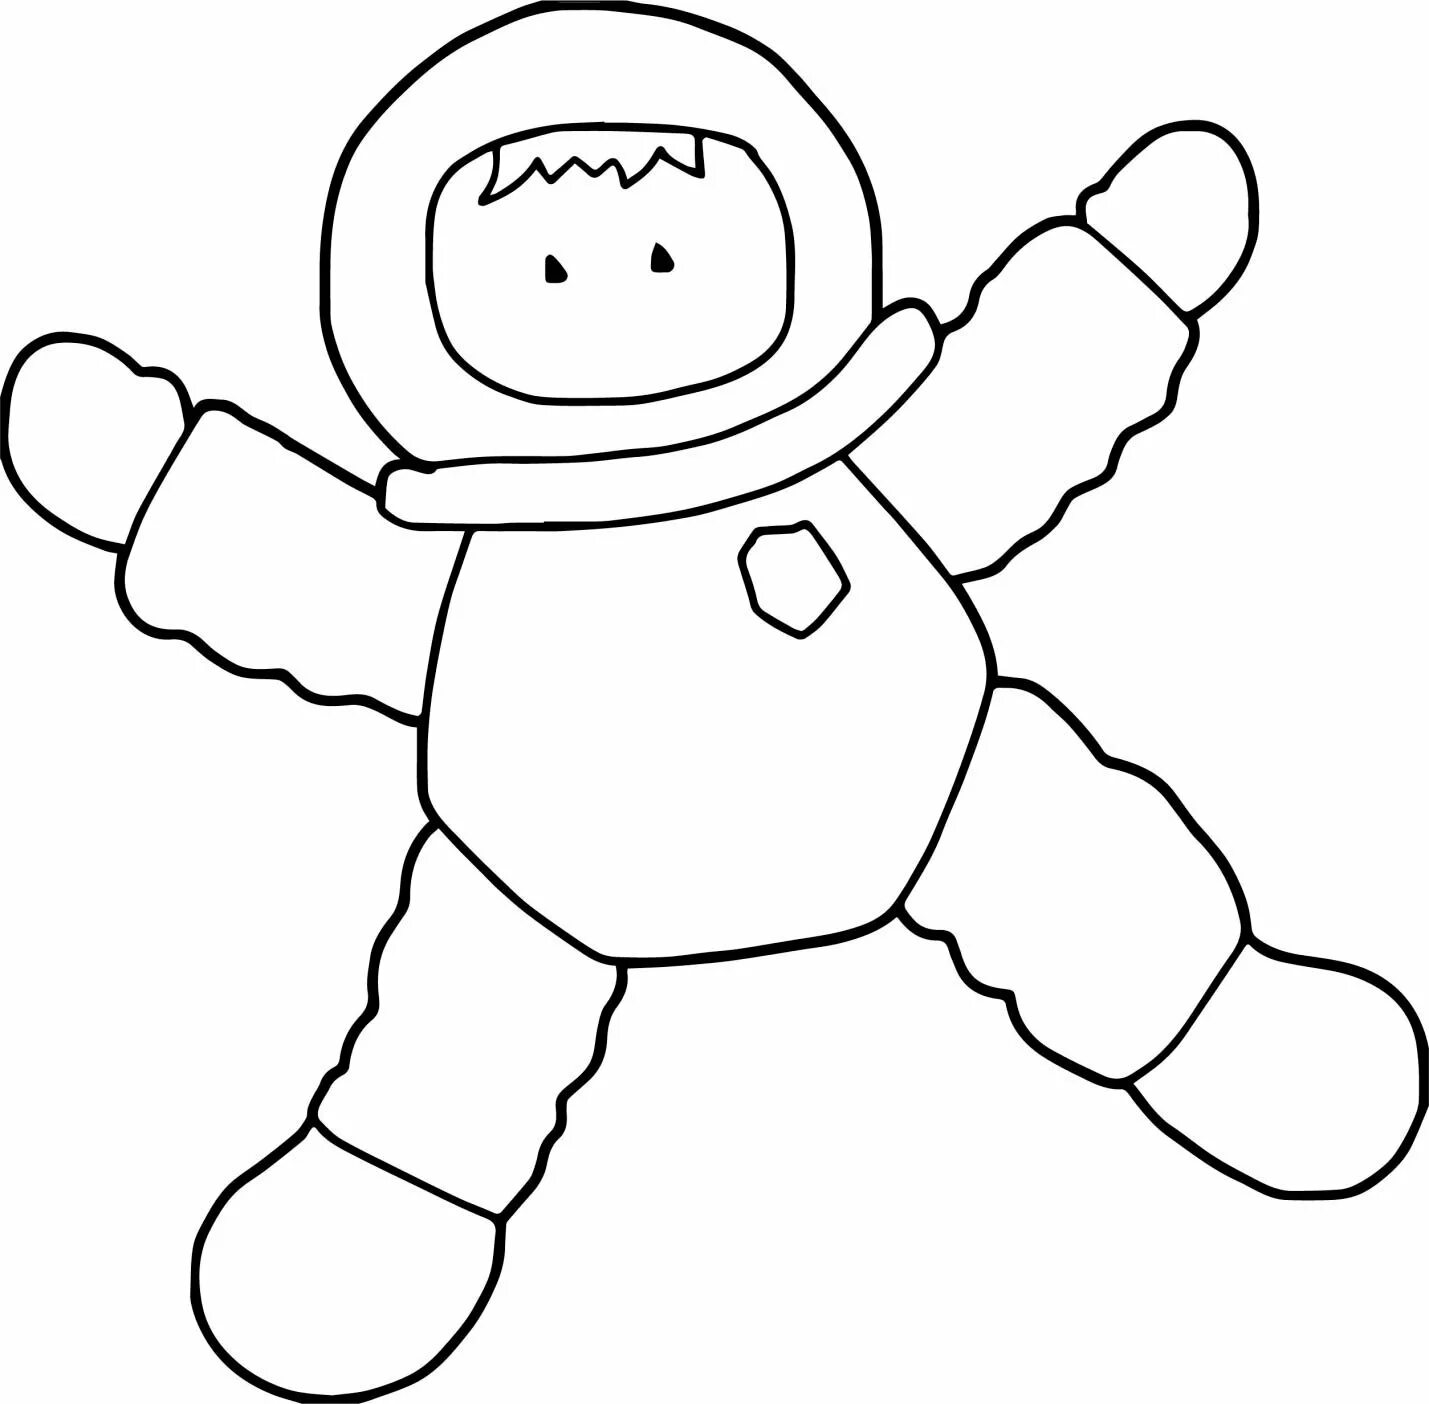 Космонавт рисунок простой. Космонавт раскраска для детей. Космонавт трафарет для детей. Космонавт картинка для детей раскраска. Космонавт раскраска для малышей.